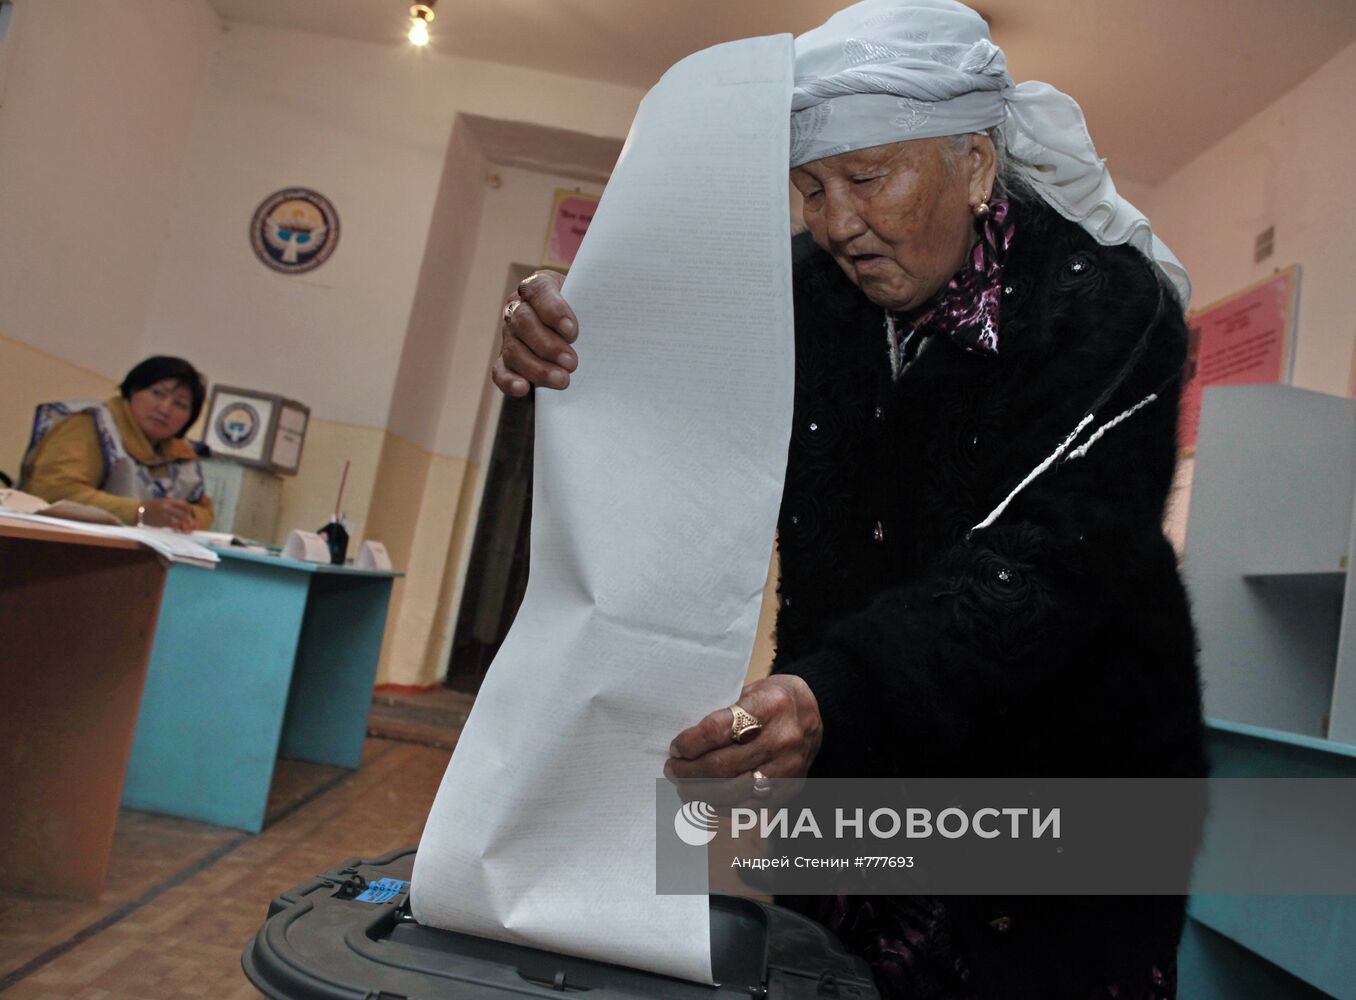 Жительница города Ош во время голосования